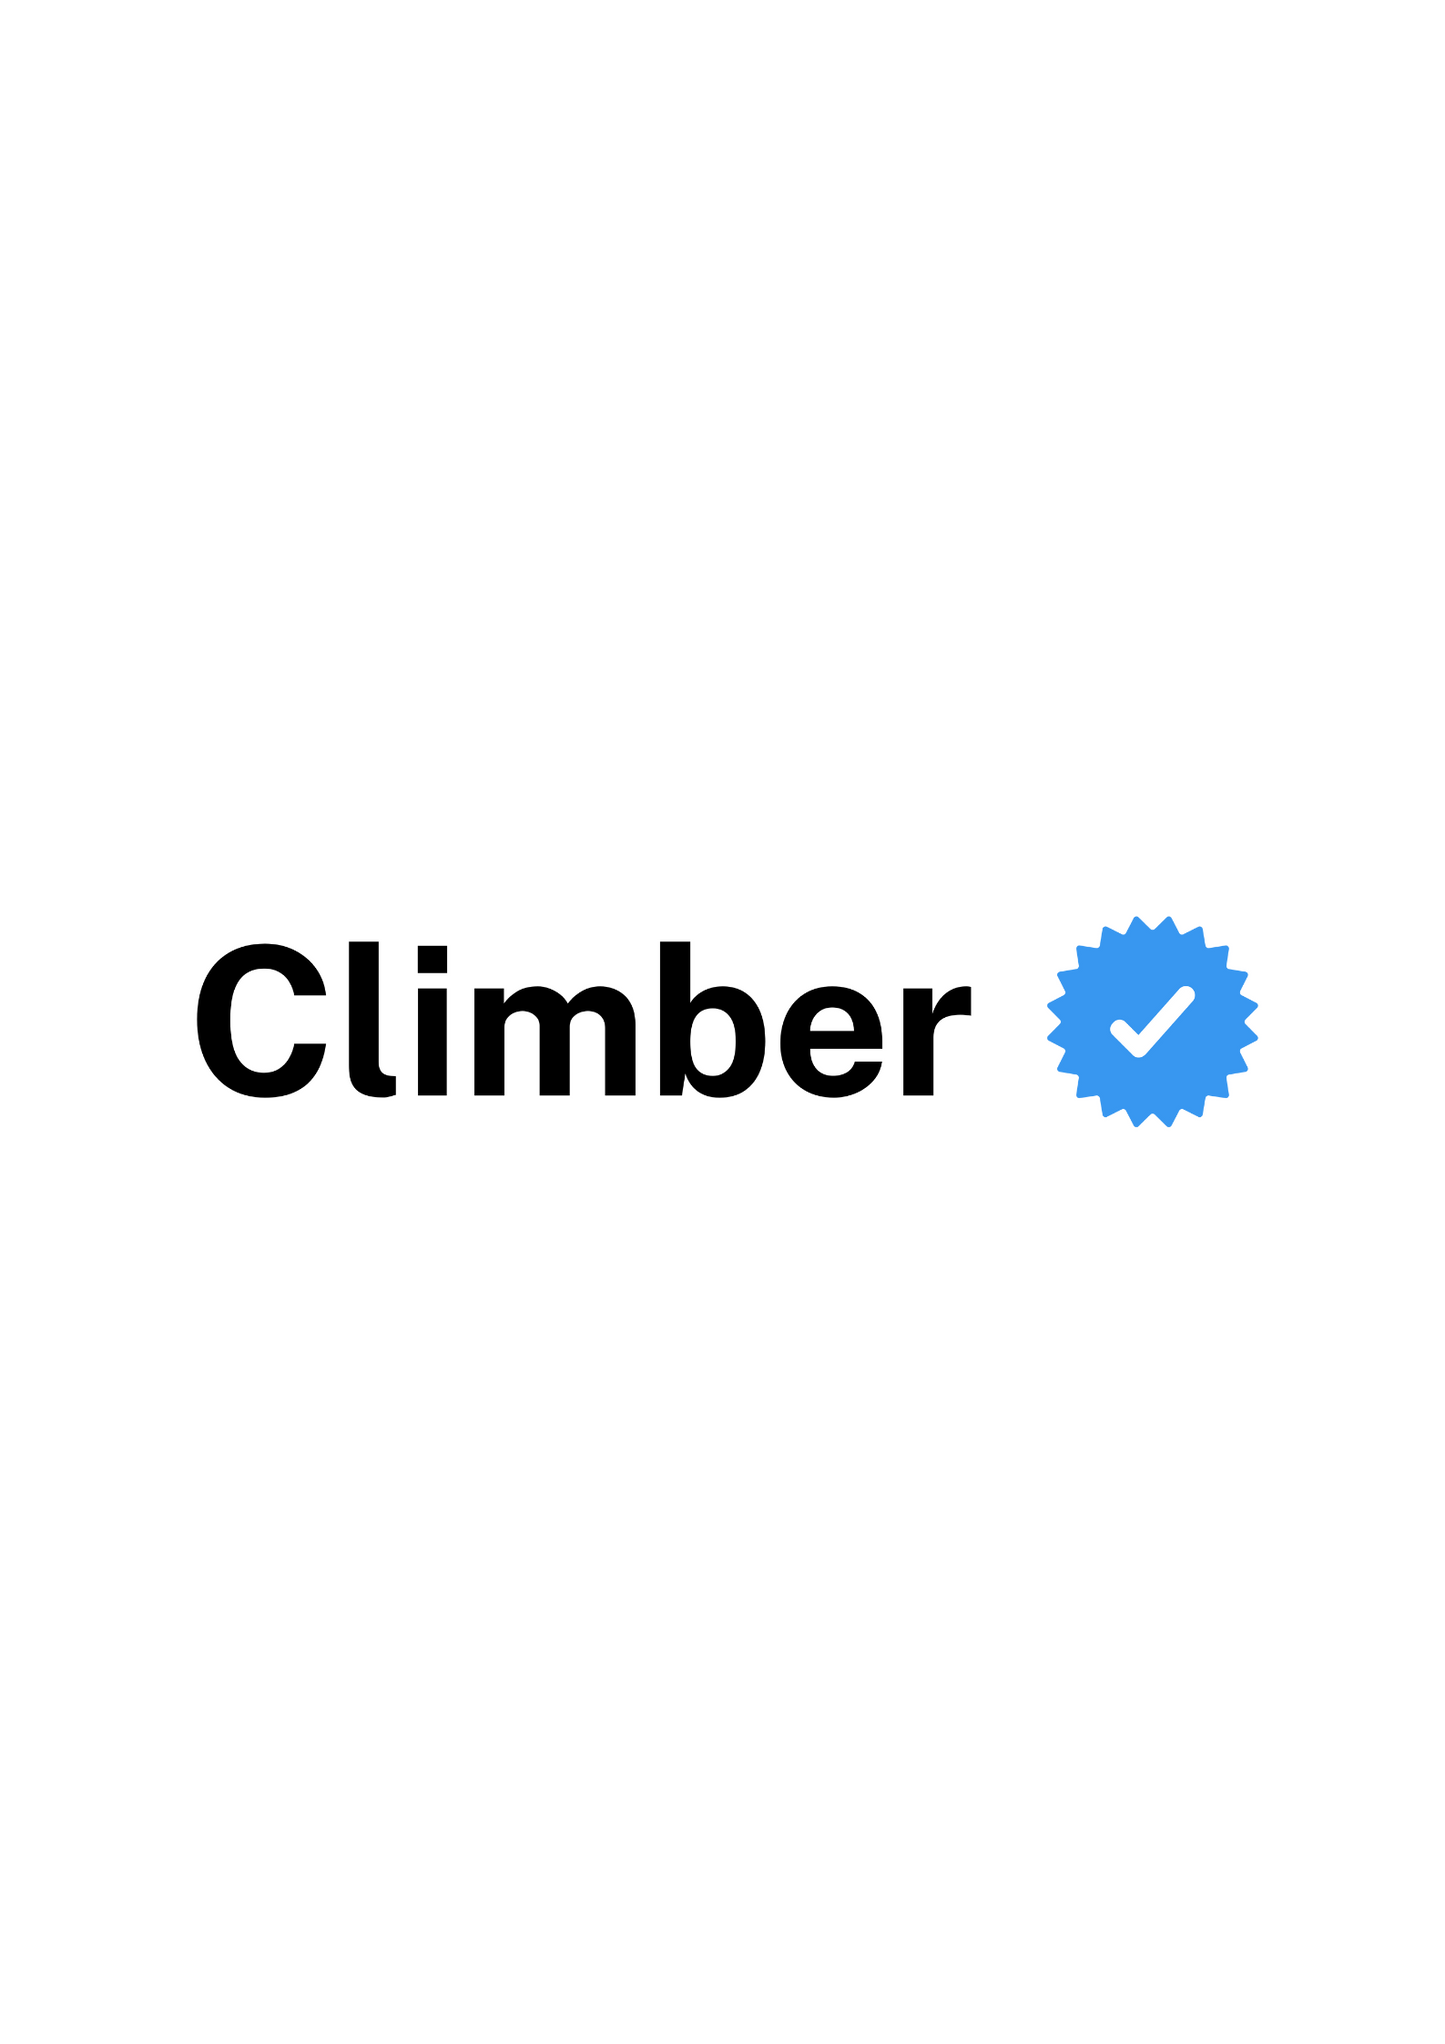 Verified Climber